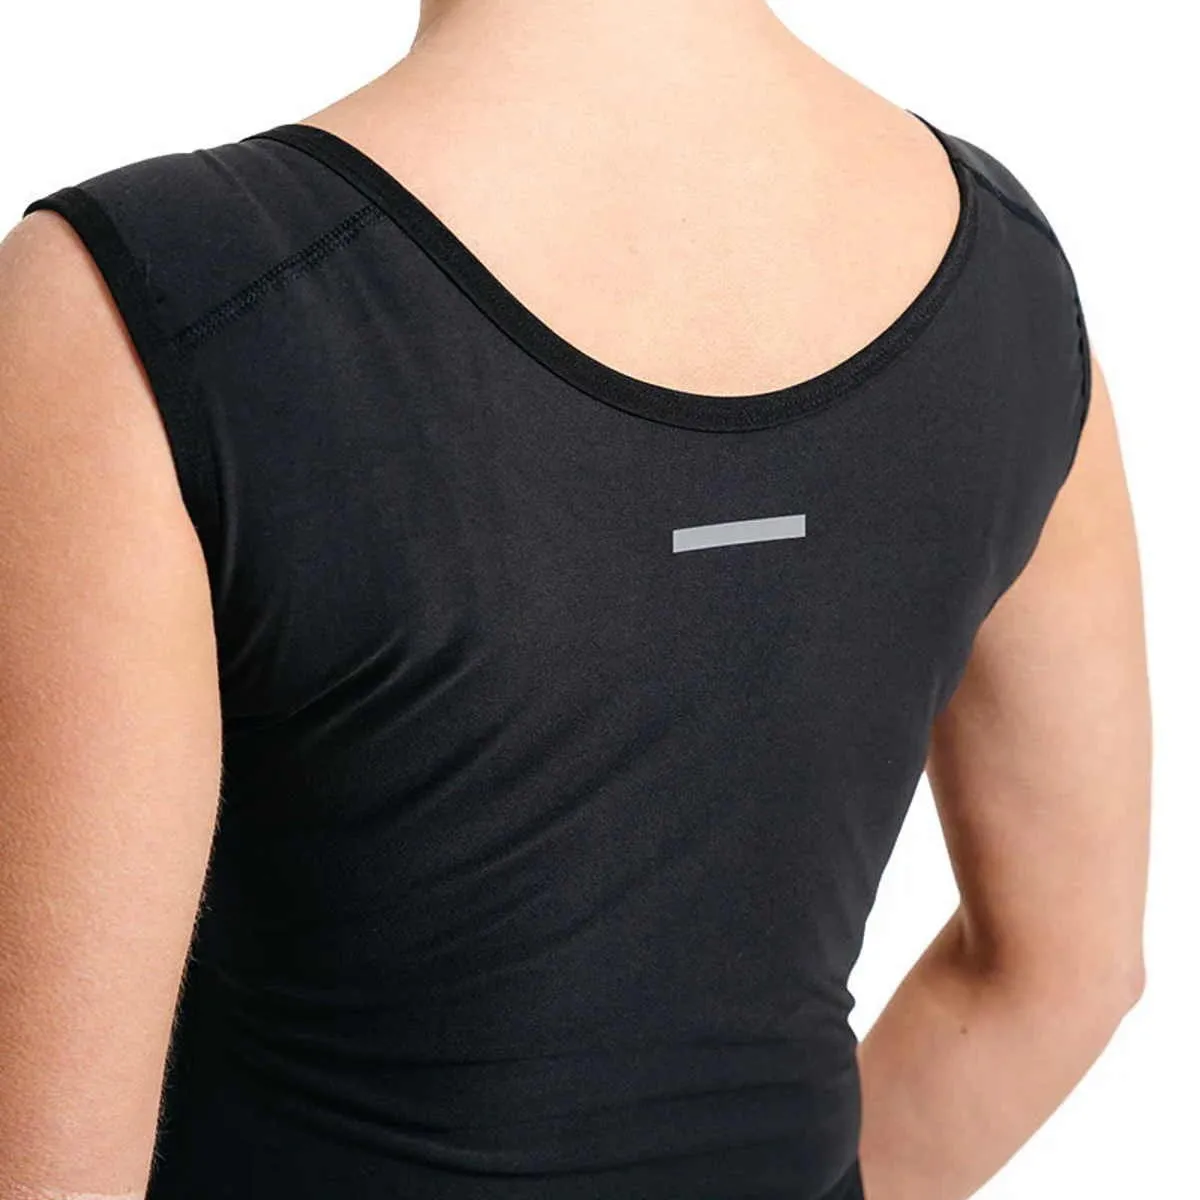 Damen Schwitz Shirt mit Reißverschluß W1 Schwarz RDX Saunashirt